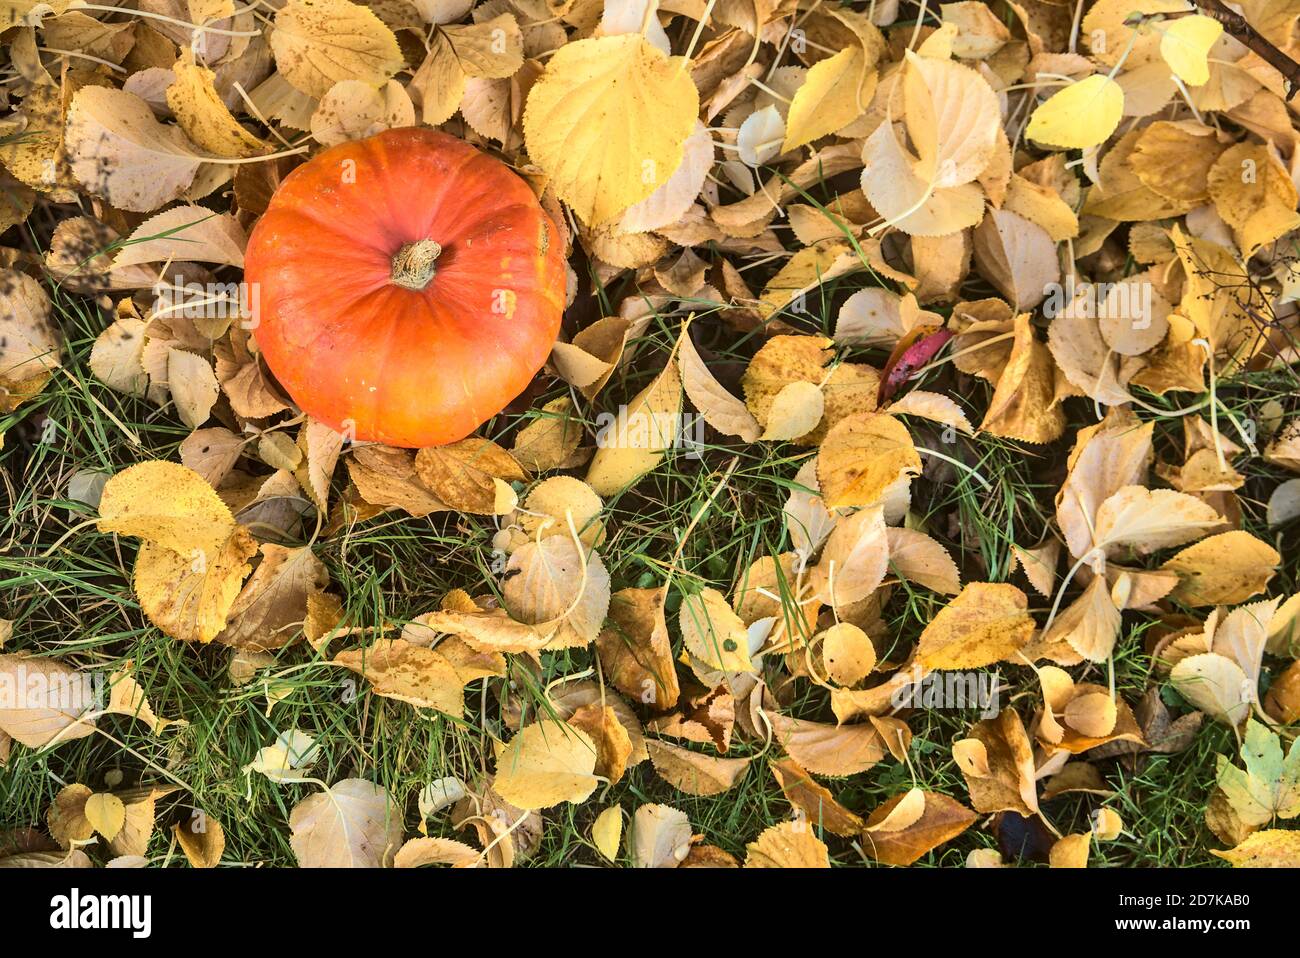 Magnifique petit citrouille orange automnale dans des feuilles mortes jaune clair. Vue de dessus. Récolte d'automne. Chute de feuilles. Copier l'espace. Automne Banque D'Images